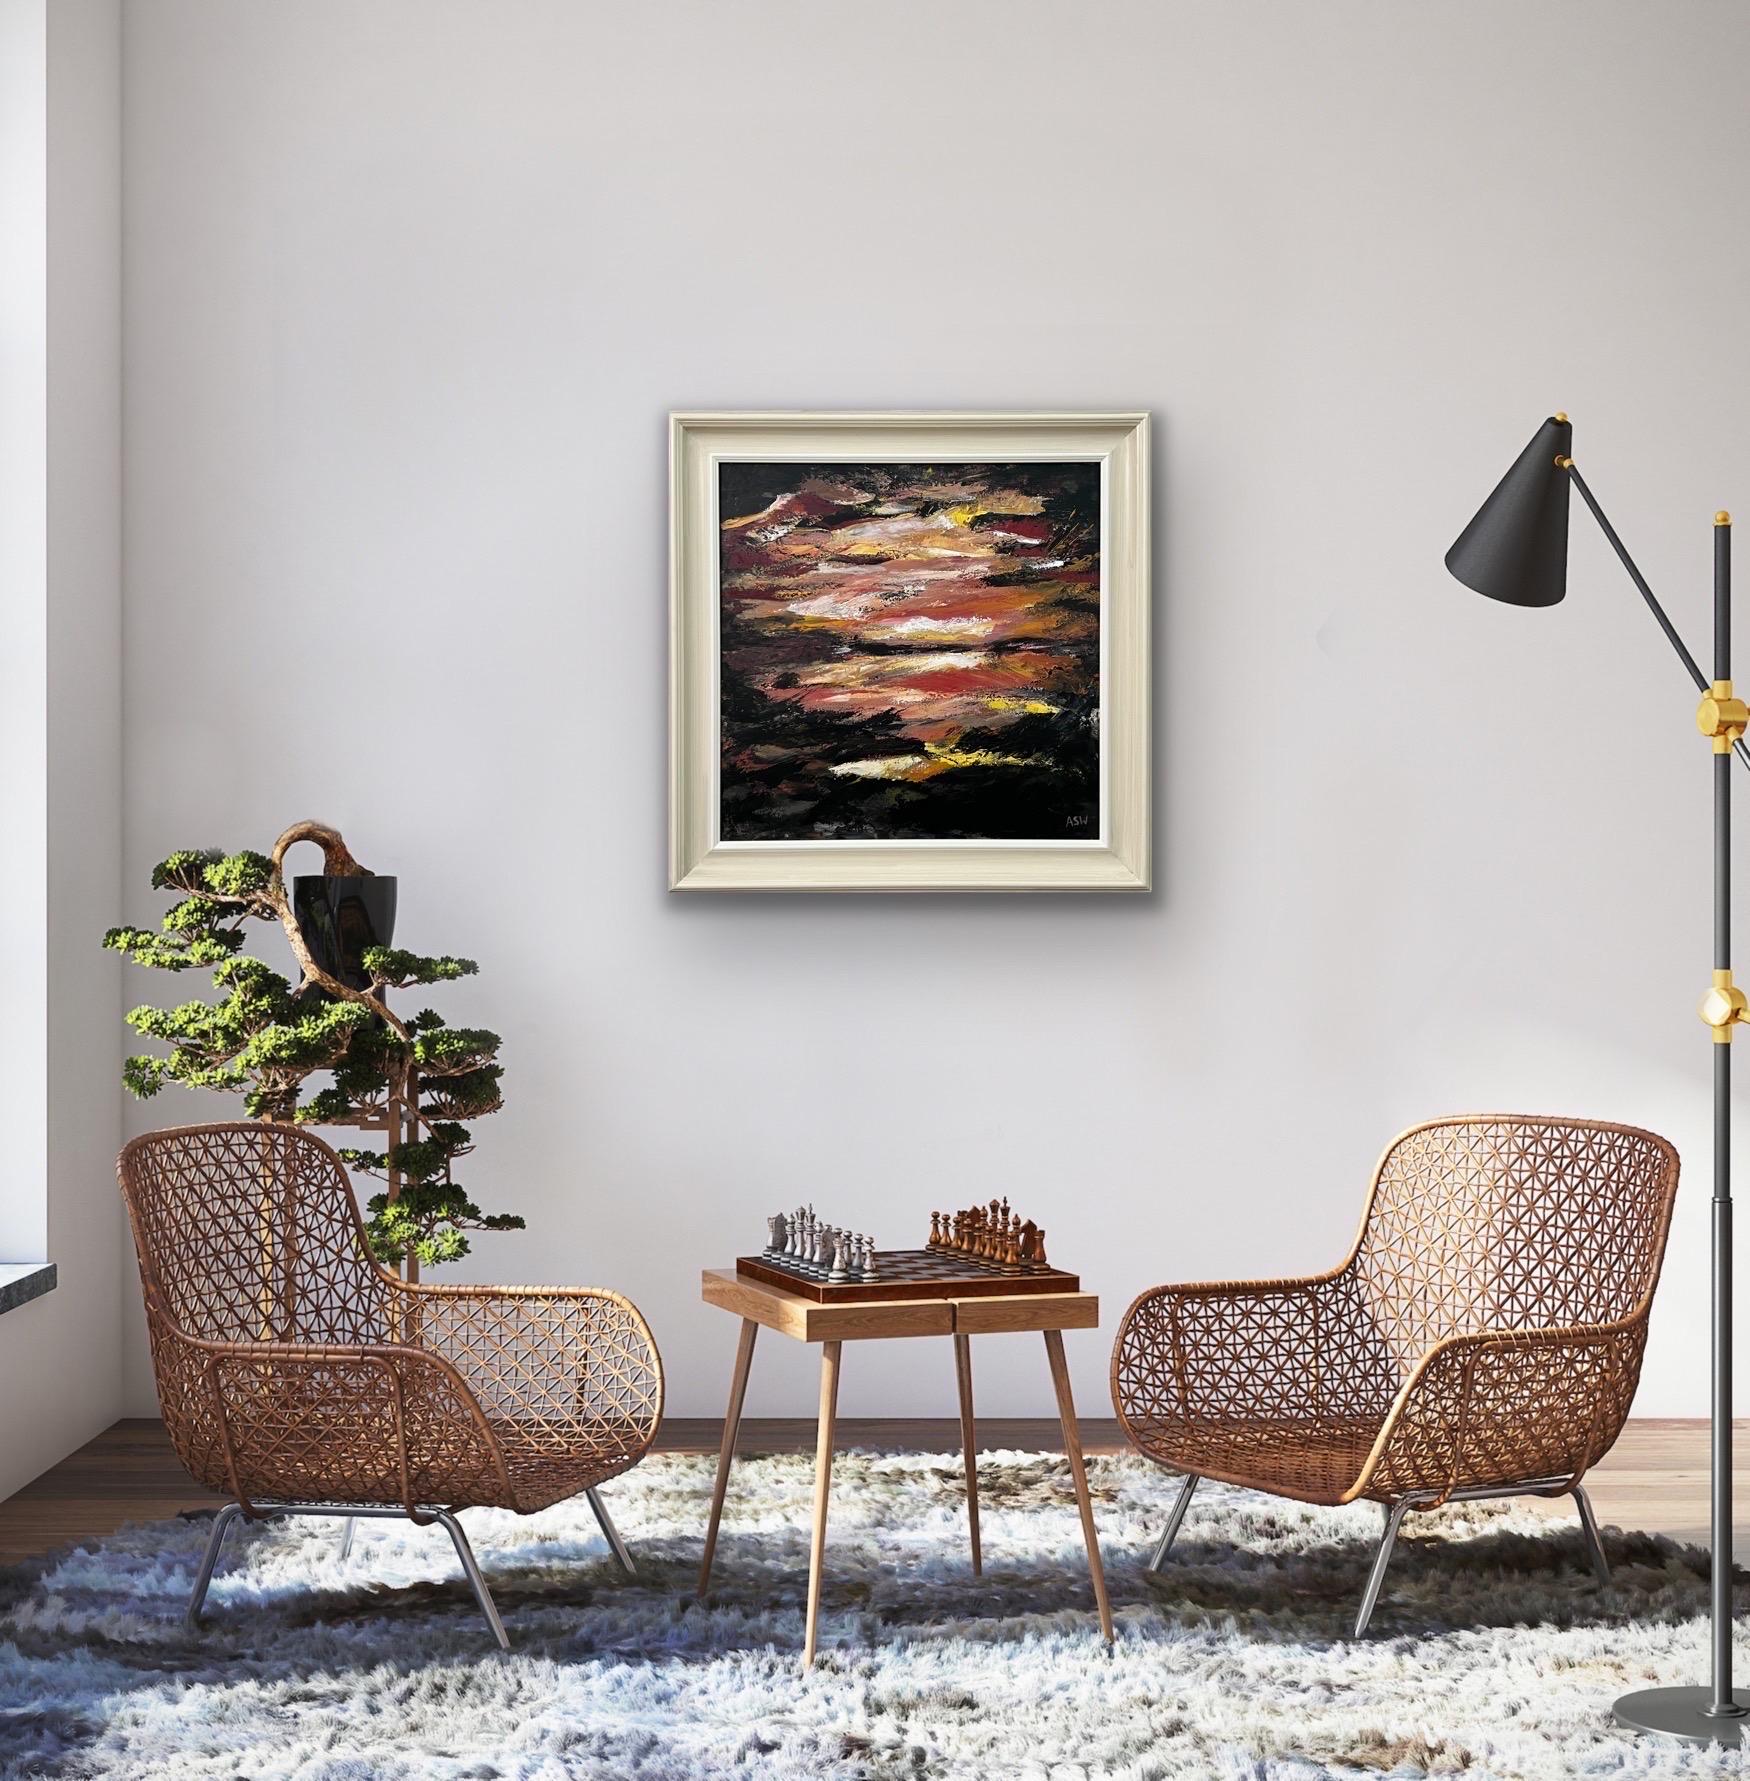 Paysage marin abstrait et impressionniste sombre de l'artiste britannique contemporaine Angela Wakefield. Cette peinture atmosphérique dépeint une scène imaginée en utilisant des couleurs noires et dorées, oranges et jaunes. Cet original unique fait